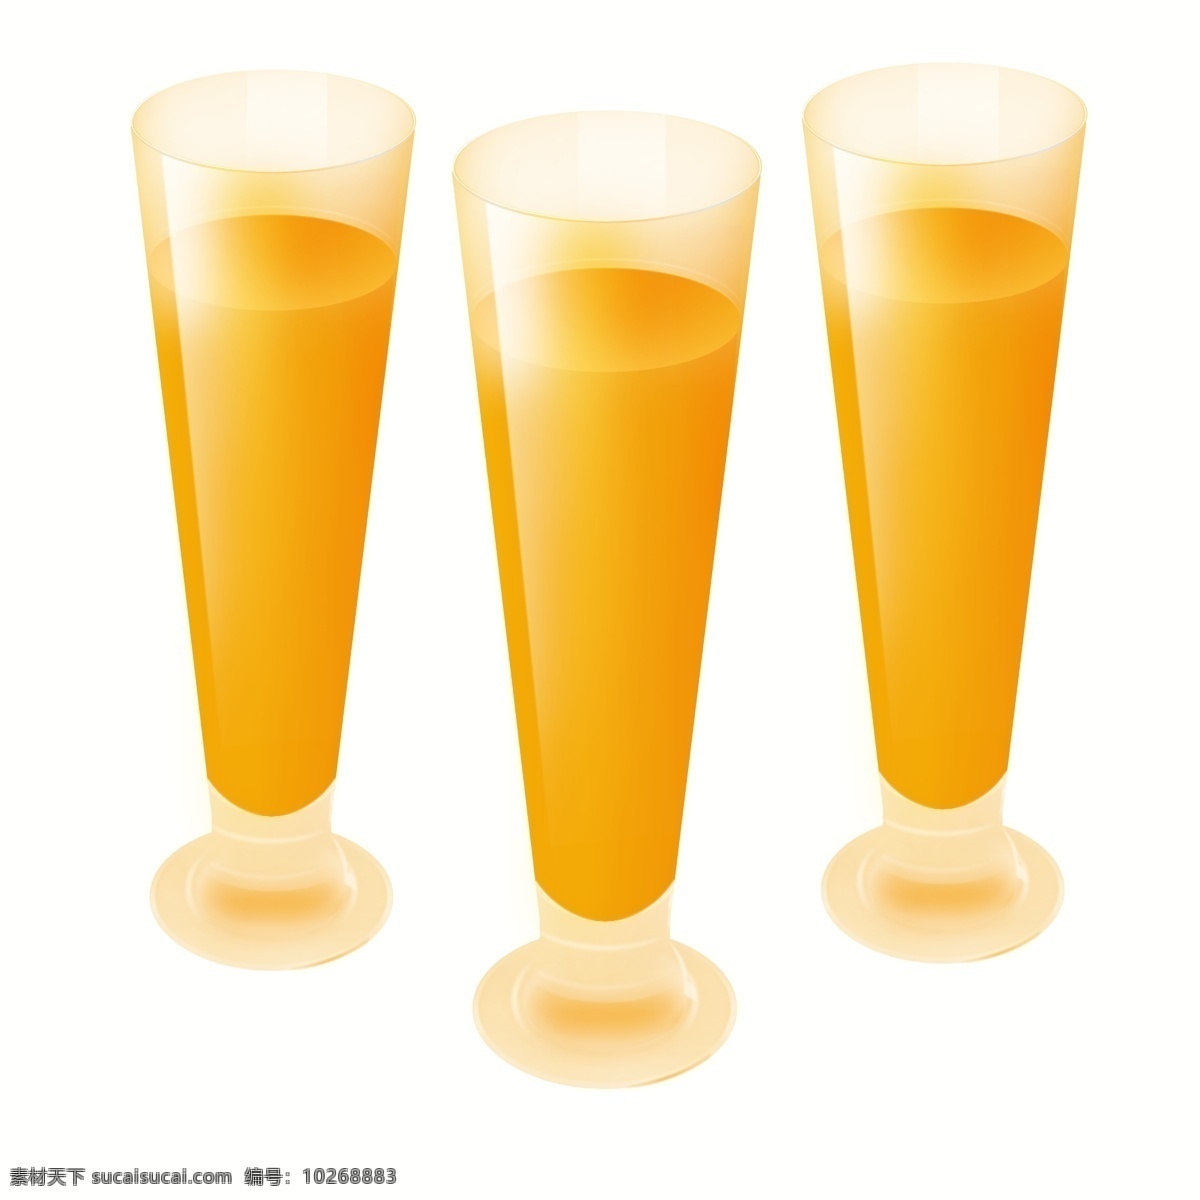 果汁 橙汁 长脚 玻璃杯 金黄色 两 杯 长杯 竖杯 大杯 金黄色果汁 满满果汁 满满橙汁 大杯果汁 大杯橙汁